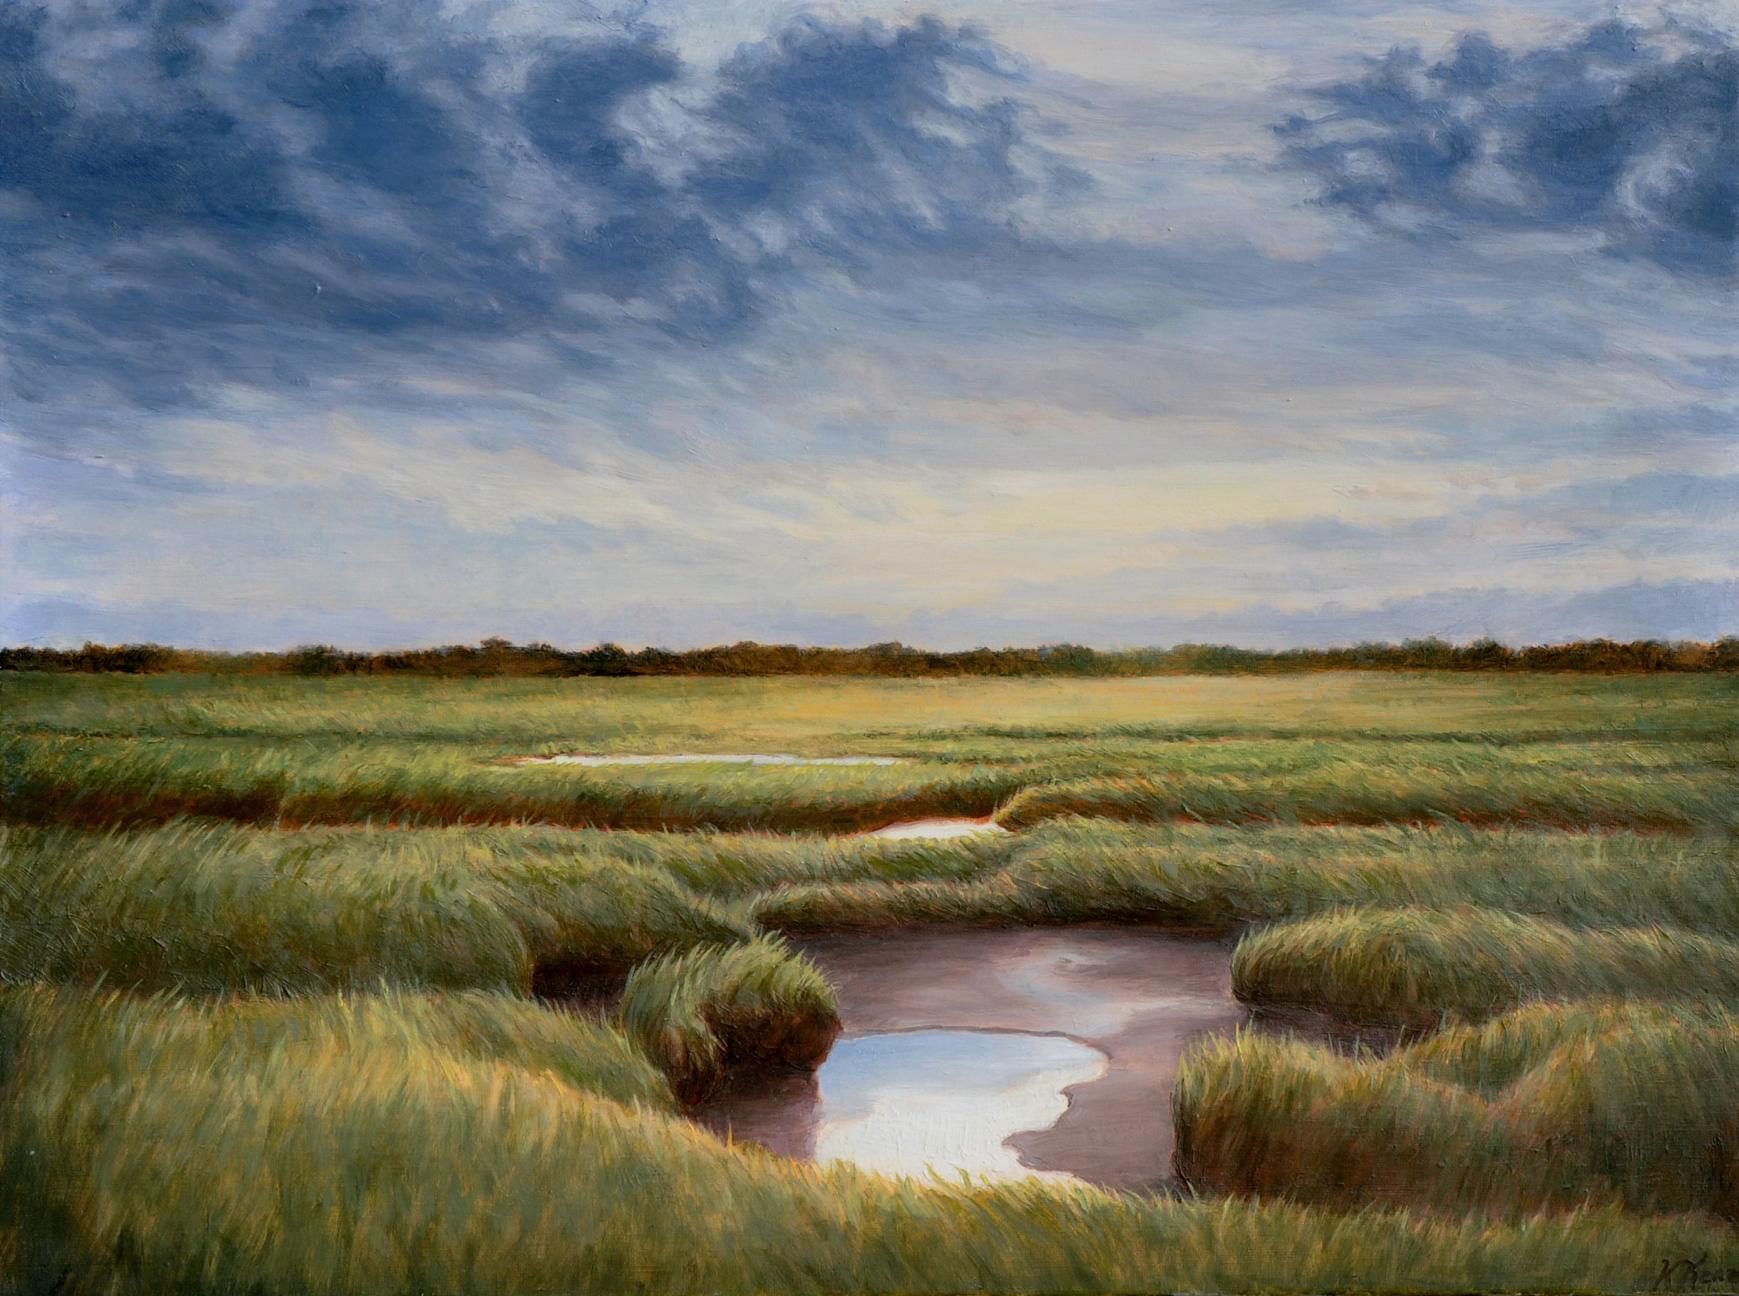 Landscape Painting Katherine Kean - Nuages tourbillonnant au-dessus du Great Marsh paysage atmosphérique contemporain